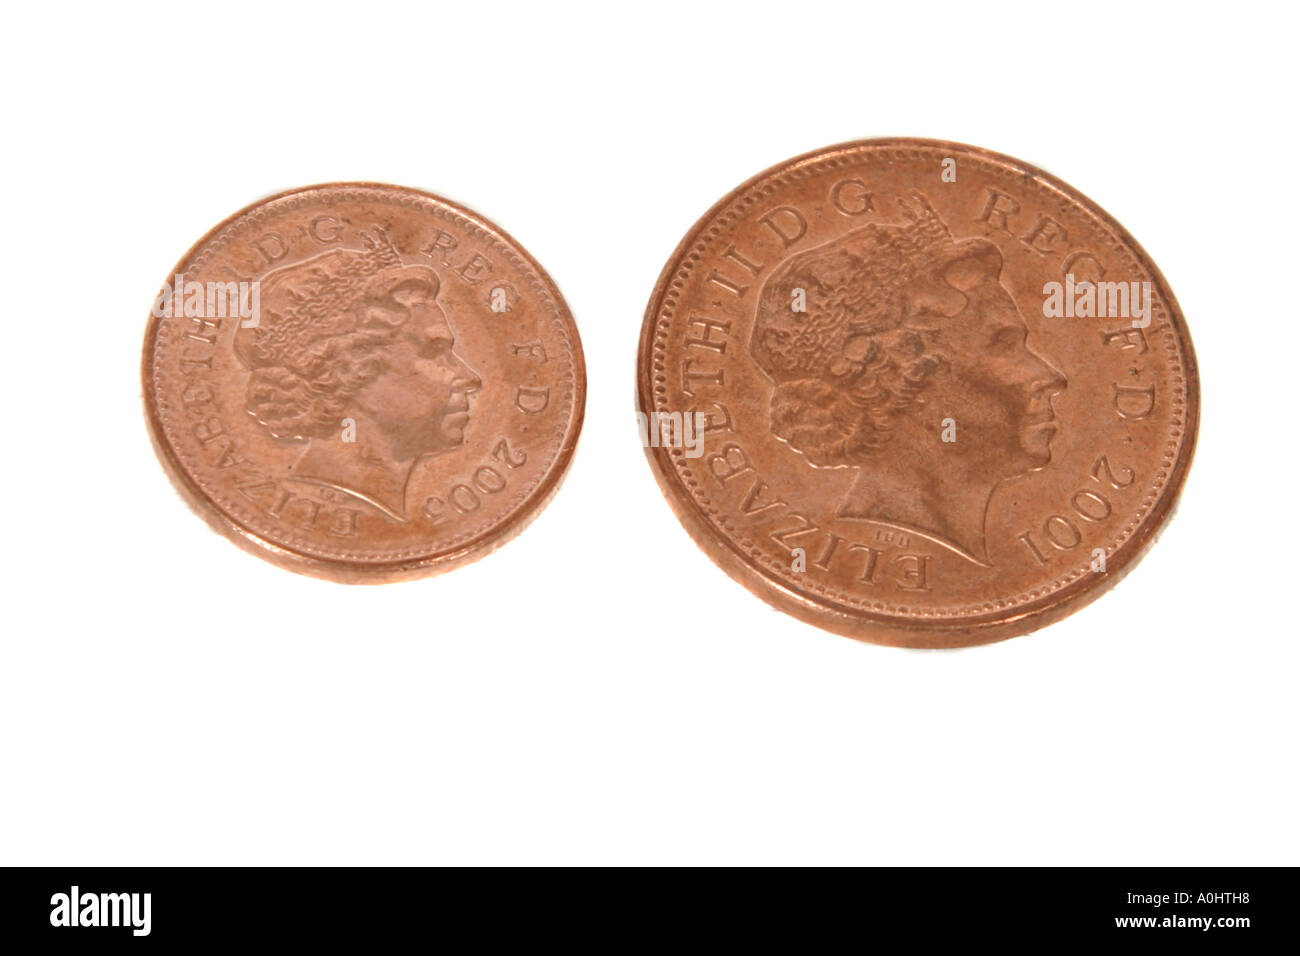 Un deux pence pièce et un penny photographié sur un fond blanc Banque D'Images